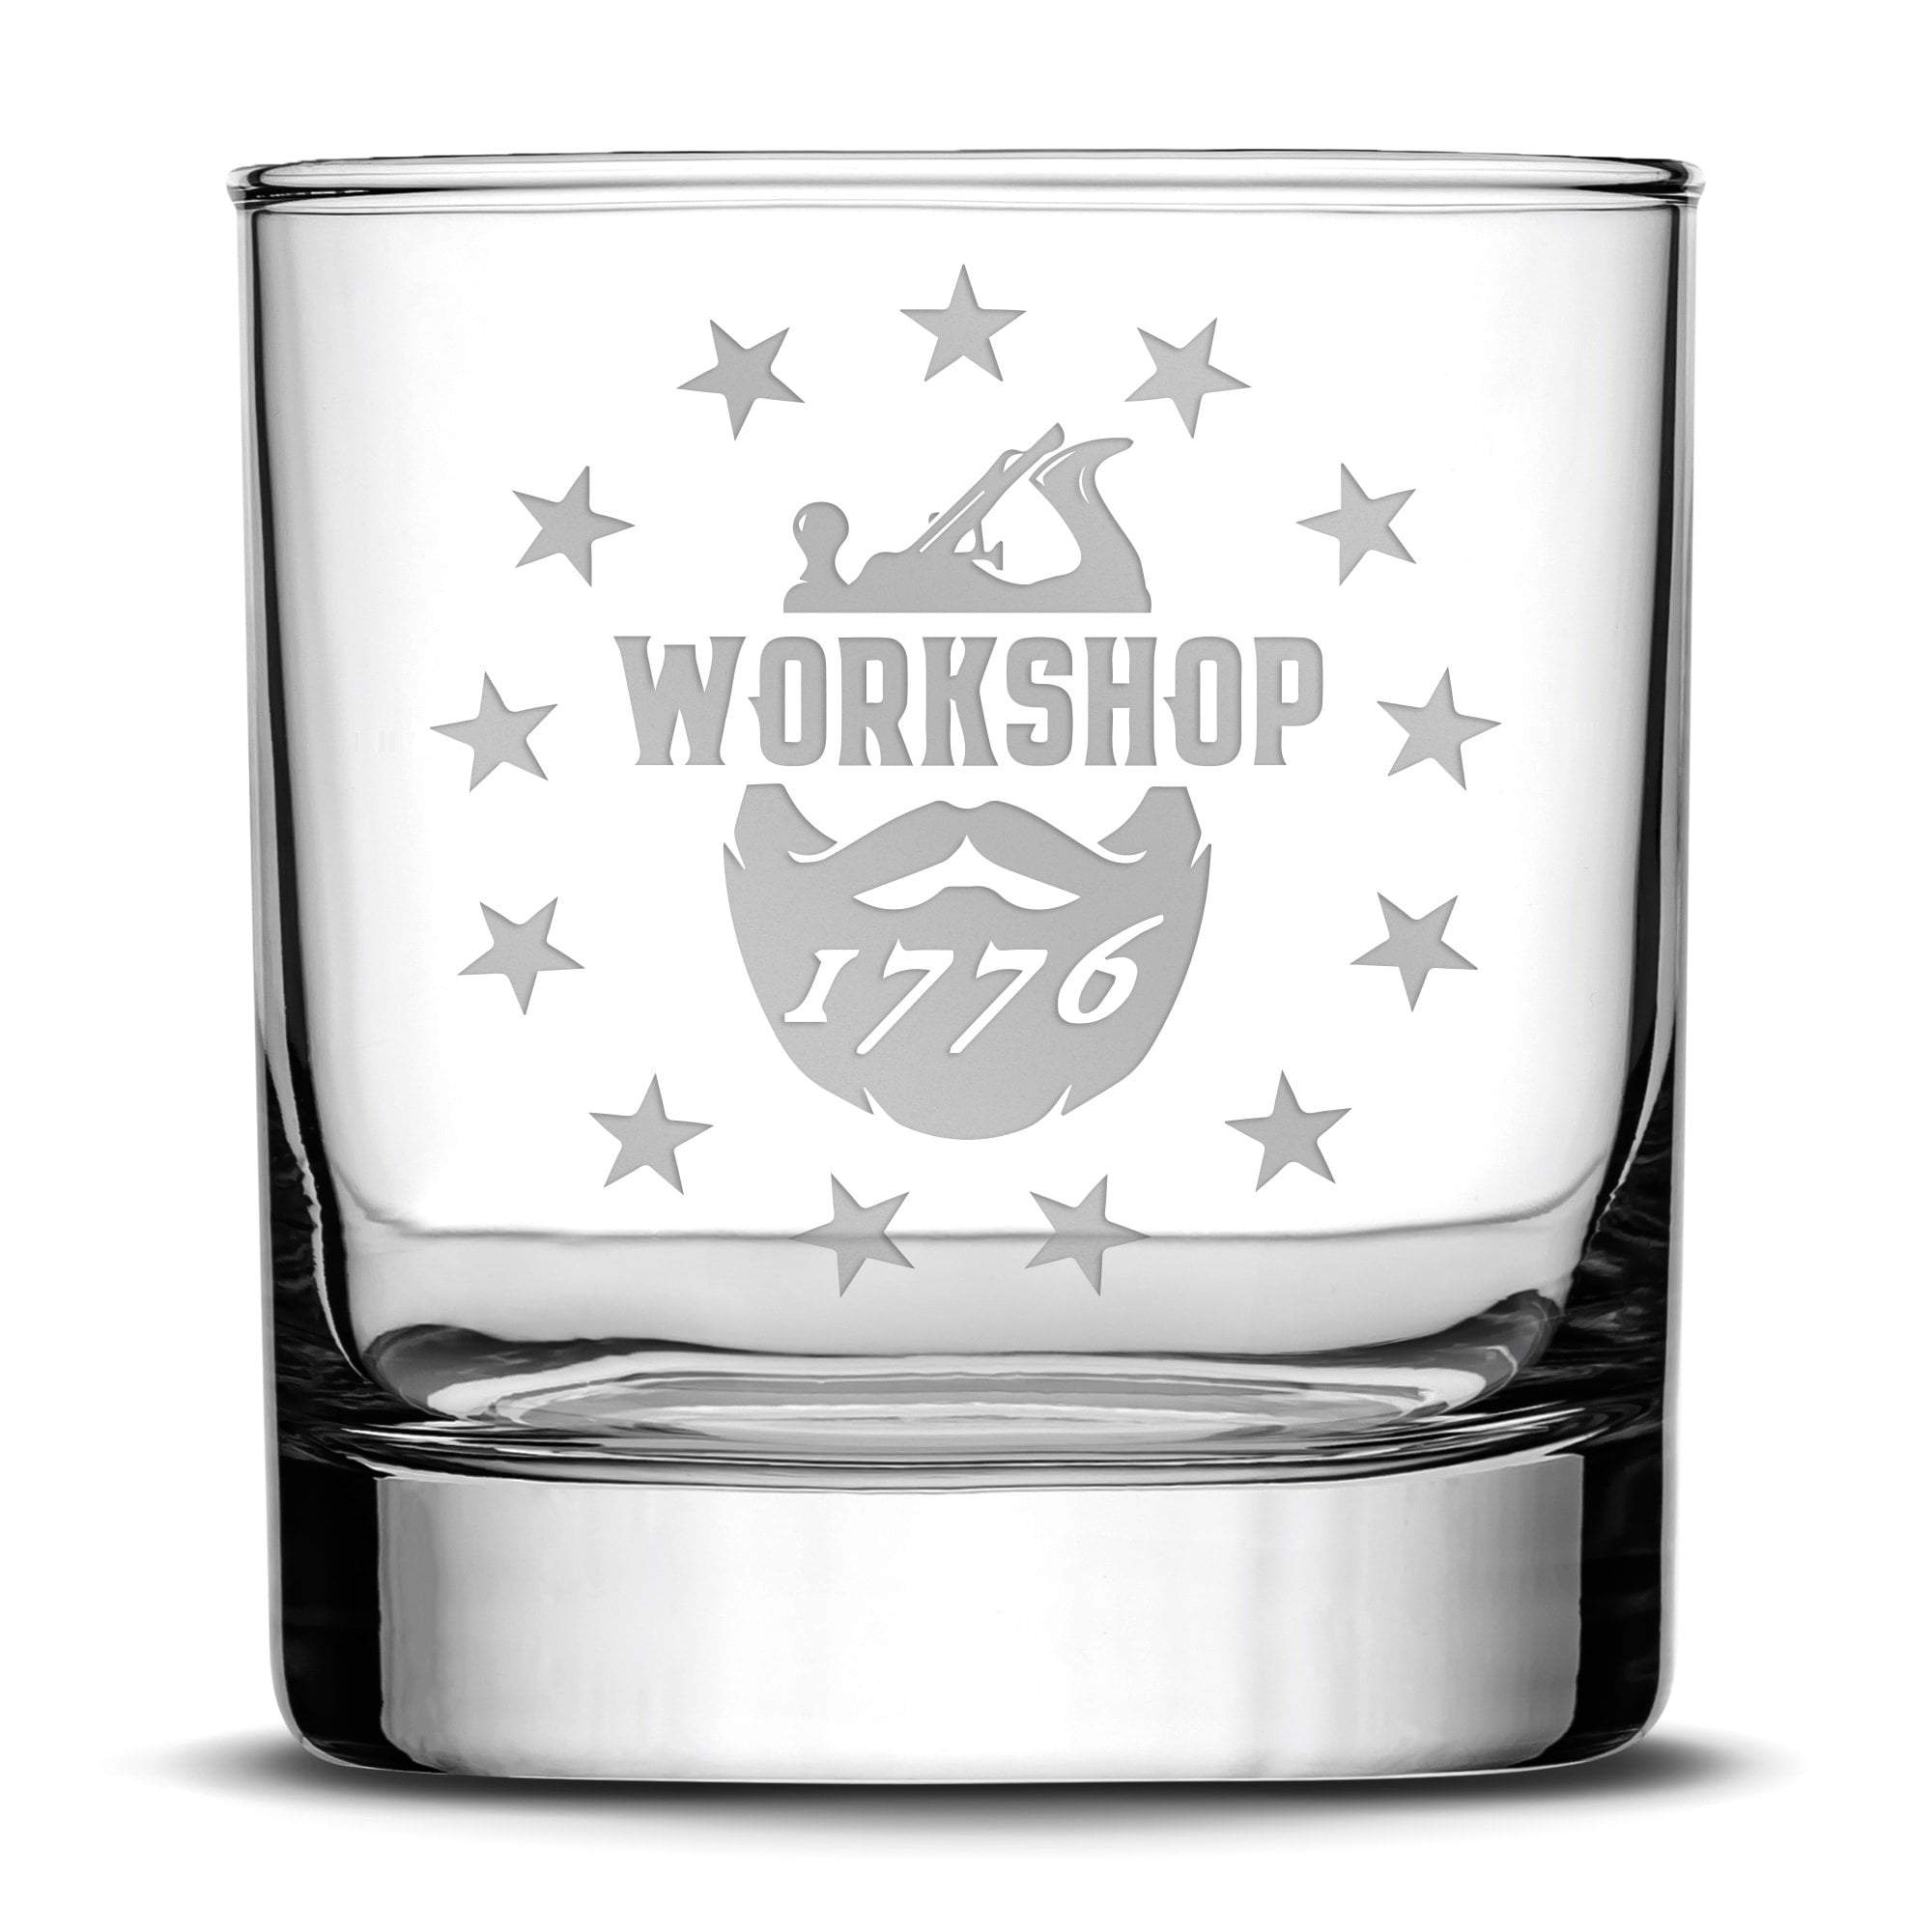 Workshop 1776 Whiskey Rocks Glass, 11oz, Laser Etched or Hand Etched